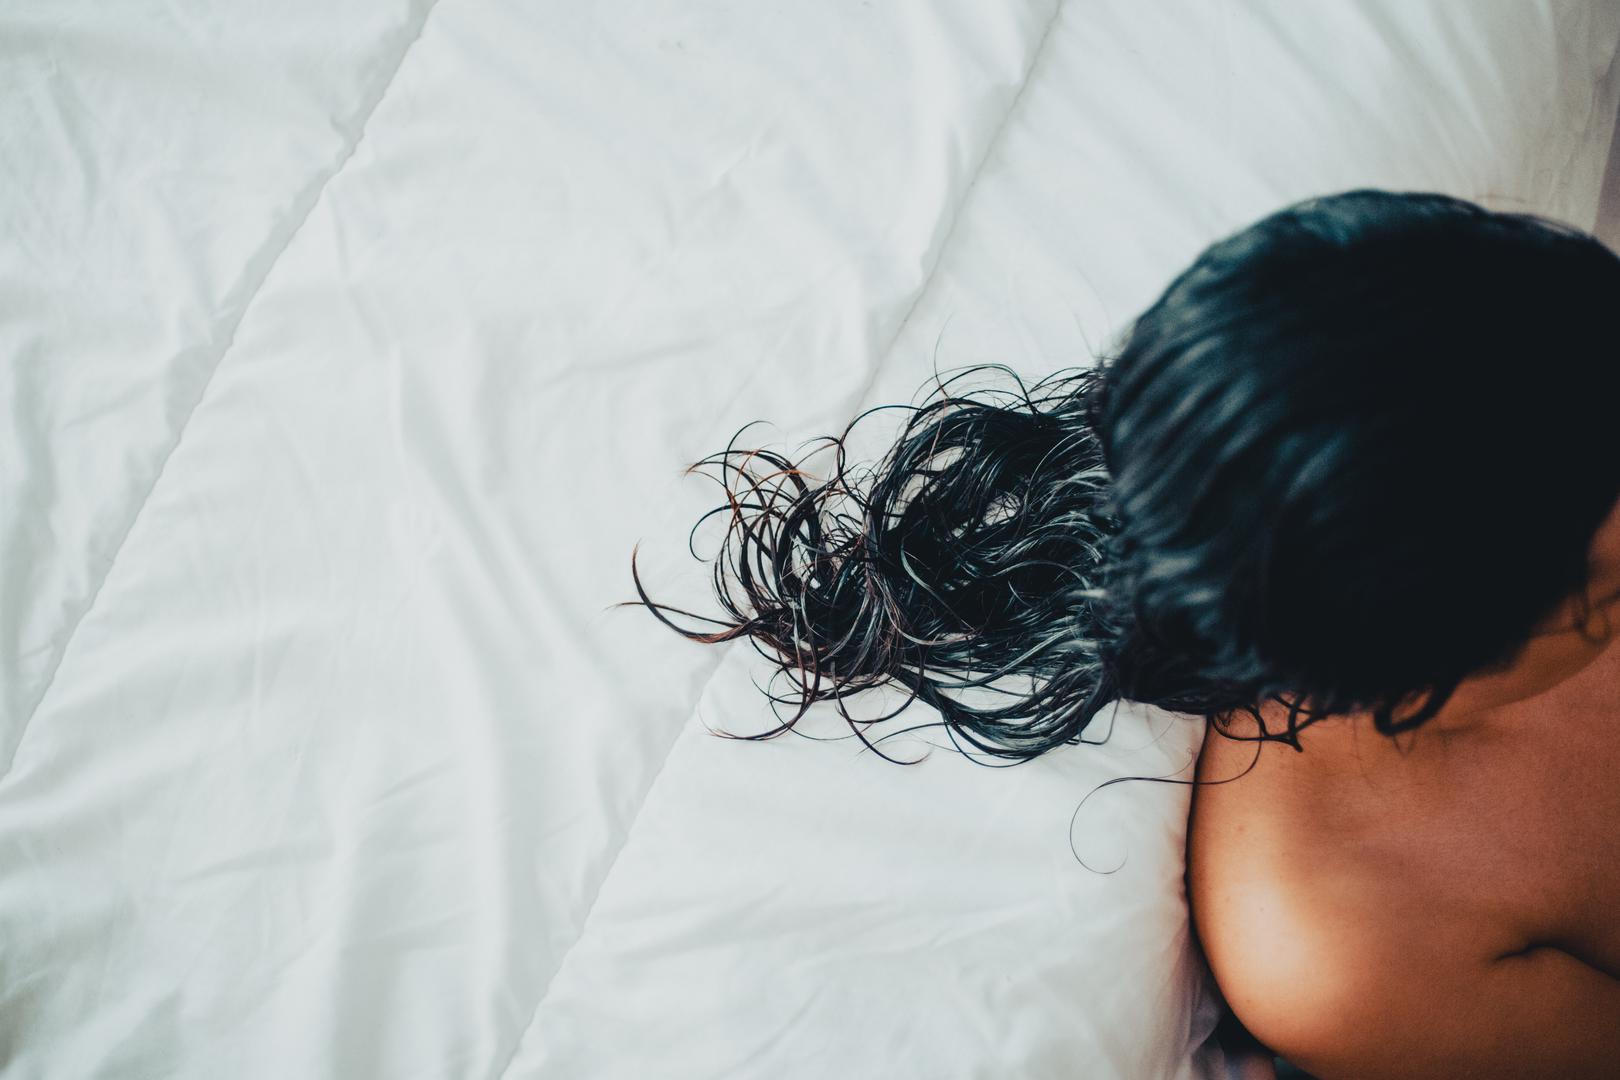 Spavanje s mokrom kosom: ‘Uvijek osušim kosu prije spavanja’, rekla je Zubritsky, ‘Spavanje s mokrom kosom stvara vlažno okruženje, koje je pogodno za razvoj bakterija i gljivica, što može dovesti do bolesti poput tinea capitisa ili pogoršati stanje poput seboreičnog dermatitisa, uzrokovanih gljivicama ili kvascima na vlasištu’. Tinea capitis je lišaj na vlasištu, dok seboreični dermatitis može uzrokovati ljuskave mrlje na vlasištu.